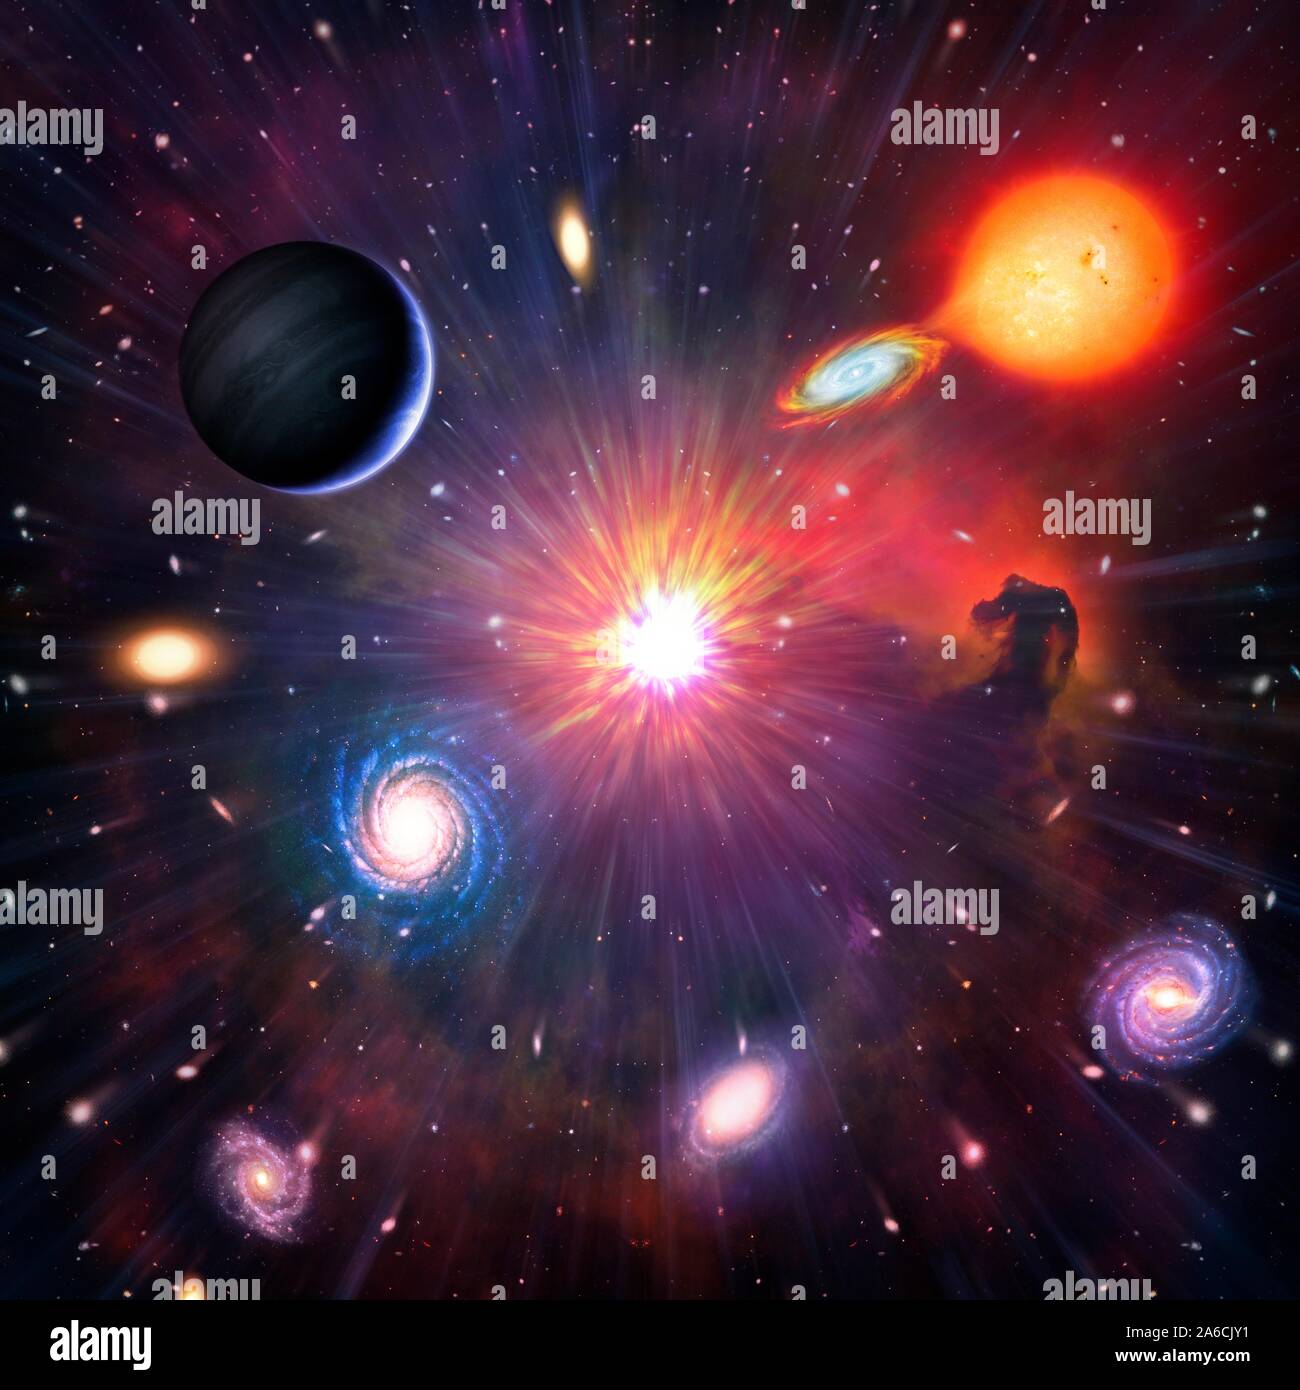 Questa è una illustrazione concettuale che rappresenta lo spazio e astronomia in generale. Essa mostra i vari oggetti che possono essere trovati nell'universo: pianeti, lune, stelle tra cui stelle binarie, nebulose e galassie. Foto Stock